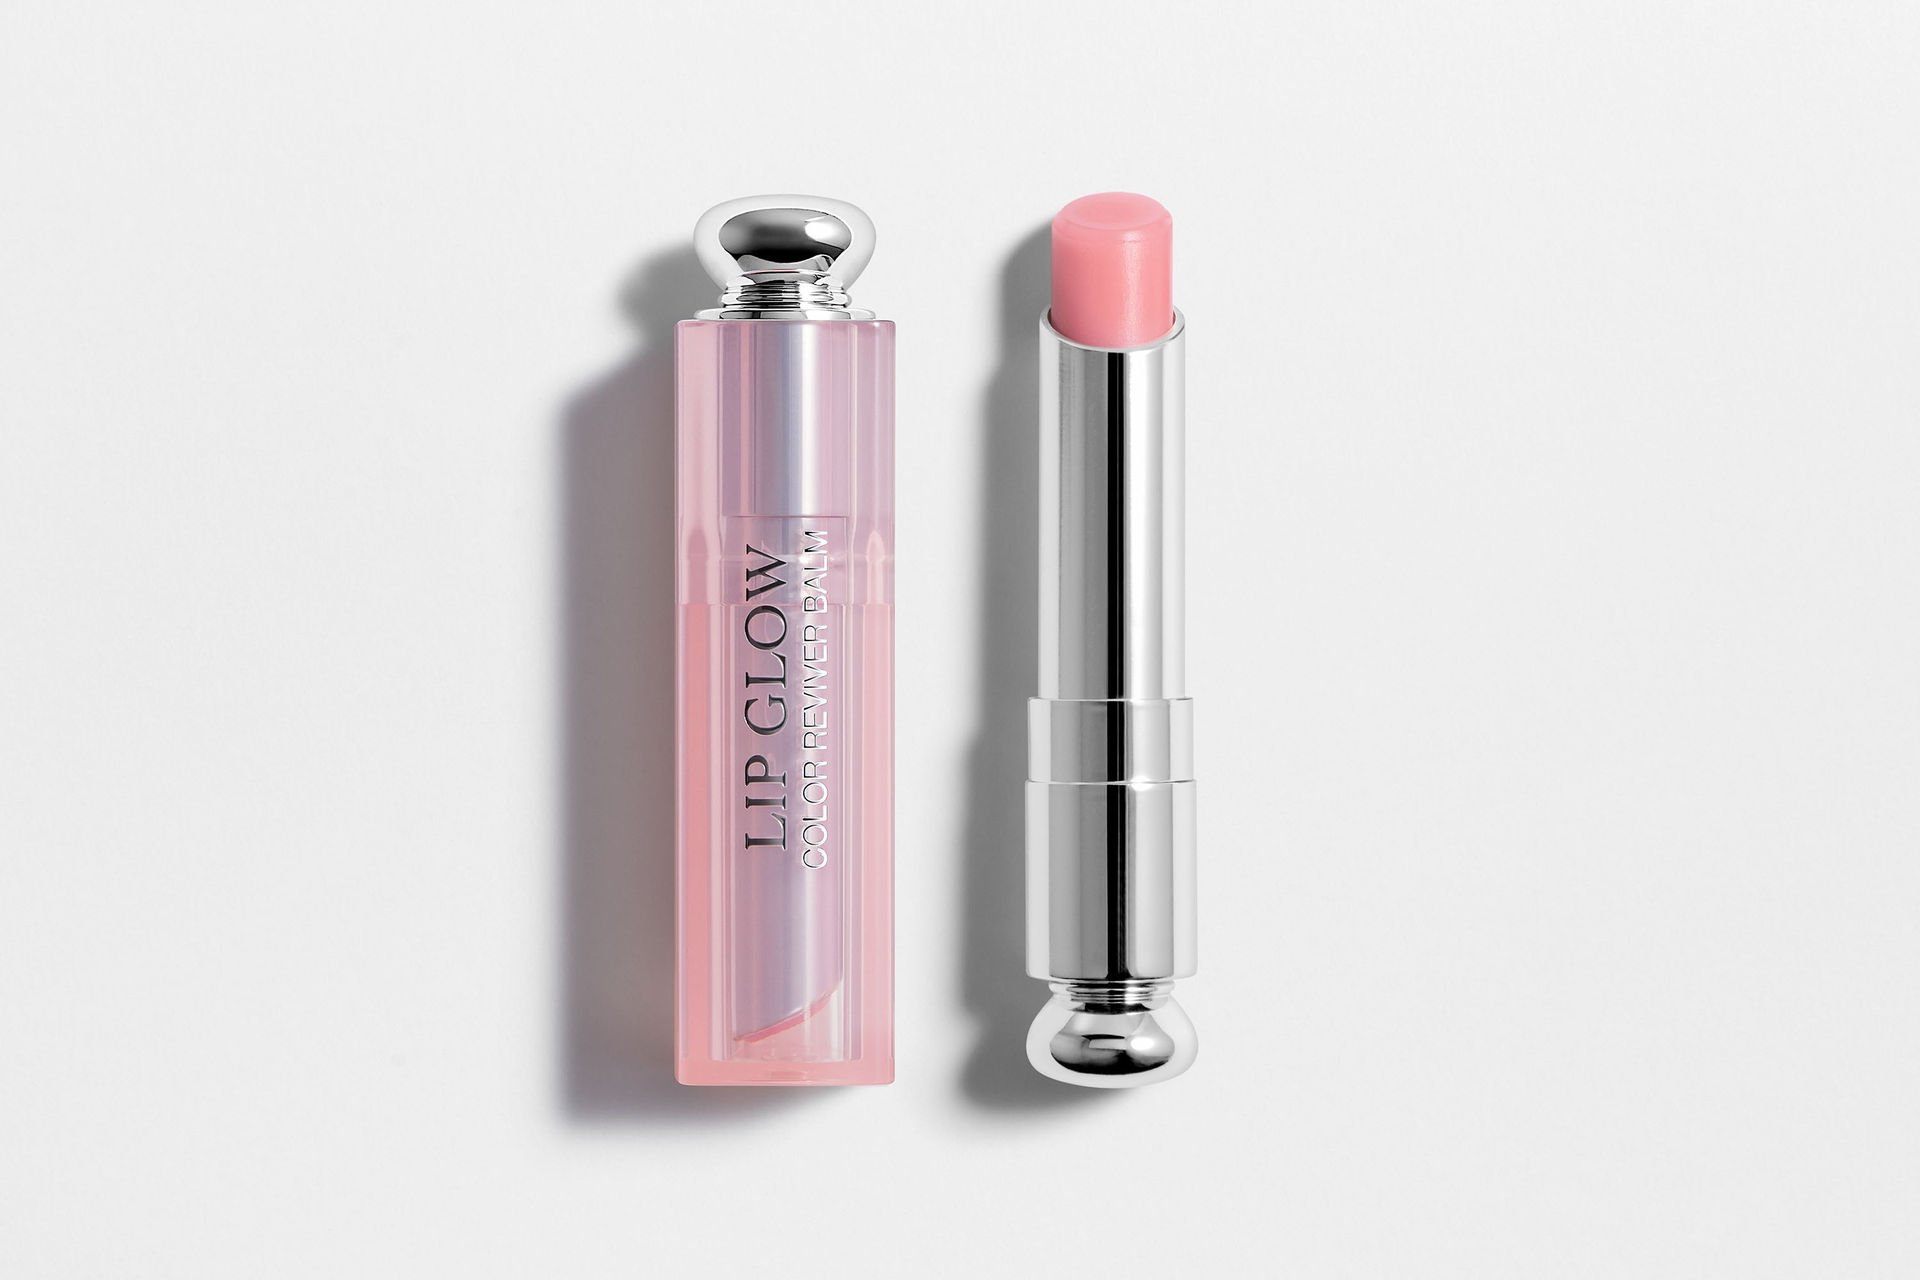   Đôi môi căng mọng và quyến rũ nhờ son dưỡng Dior Addict Lip Glow.   